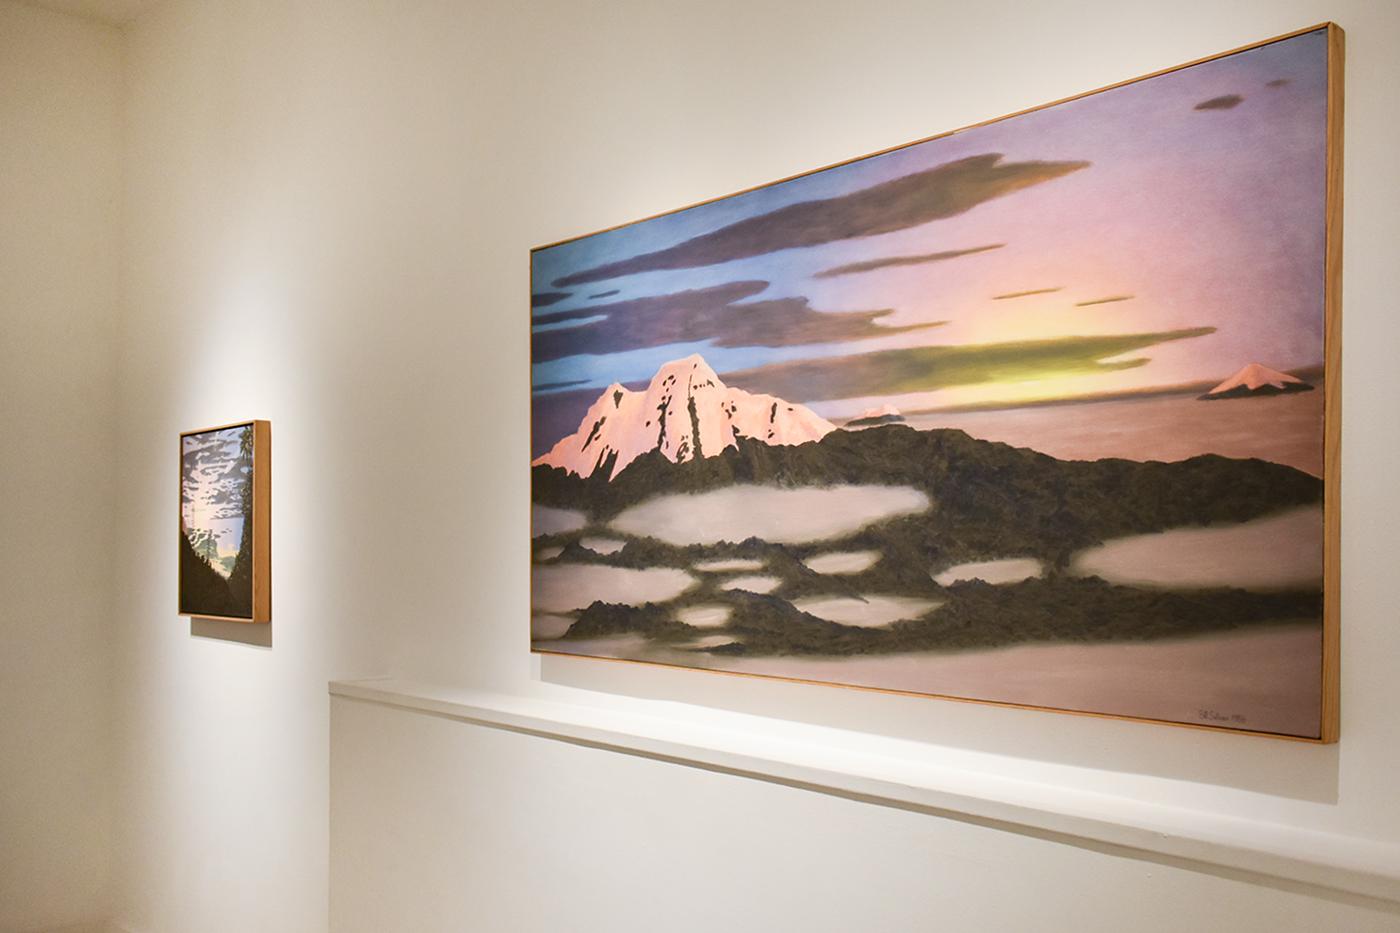 36 x 72 pouces avec cadre en bois fin
$8,500

Peinture à l'huile moderne et horizontale d'un grand volcan dans les Andes équatoriennes. La peinture à l'huile est très colorée avec des teintes très saturées pour représenter un coucher de soleil